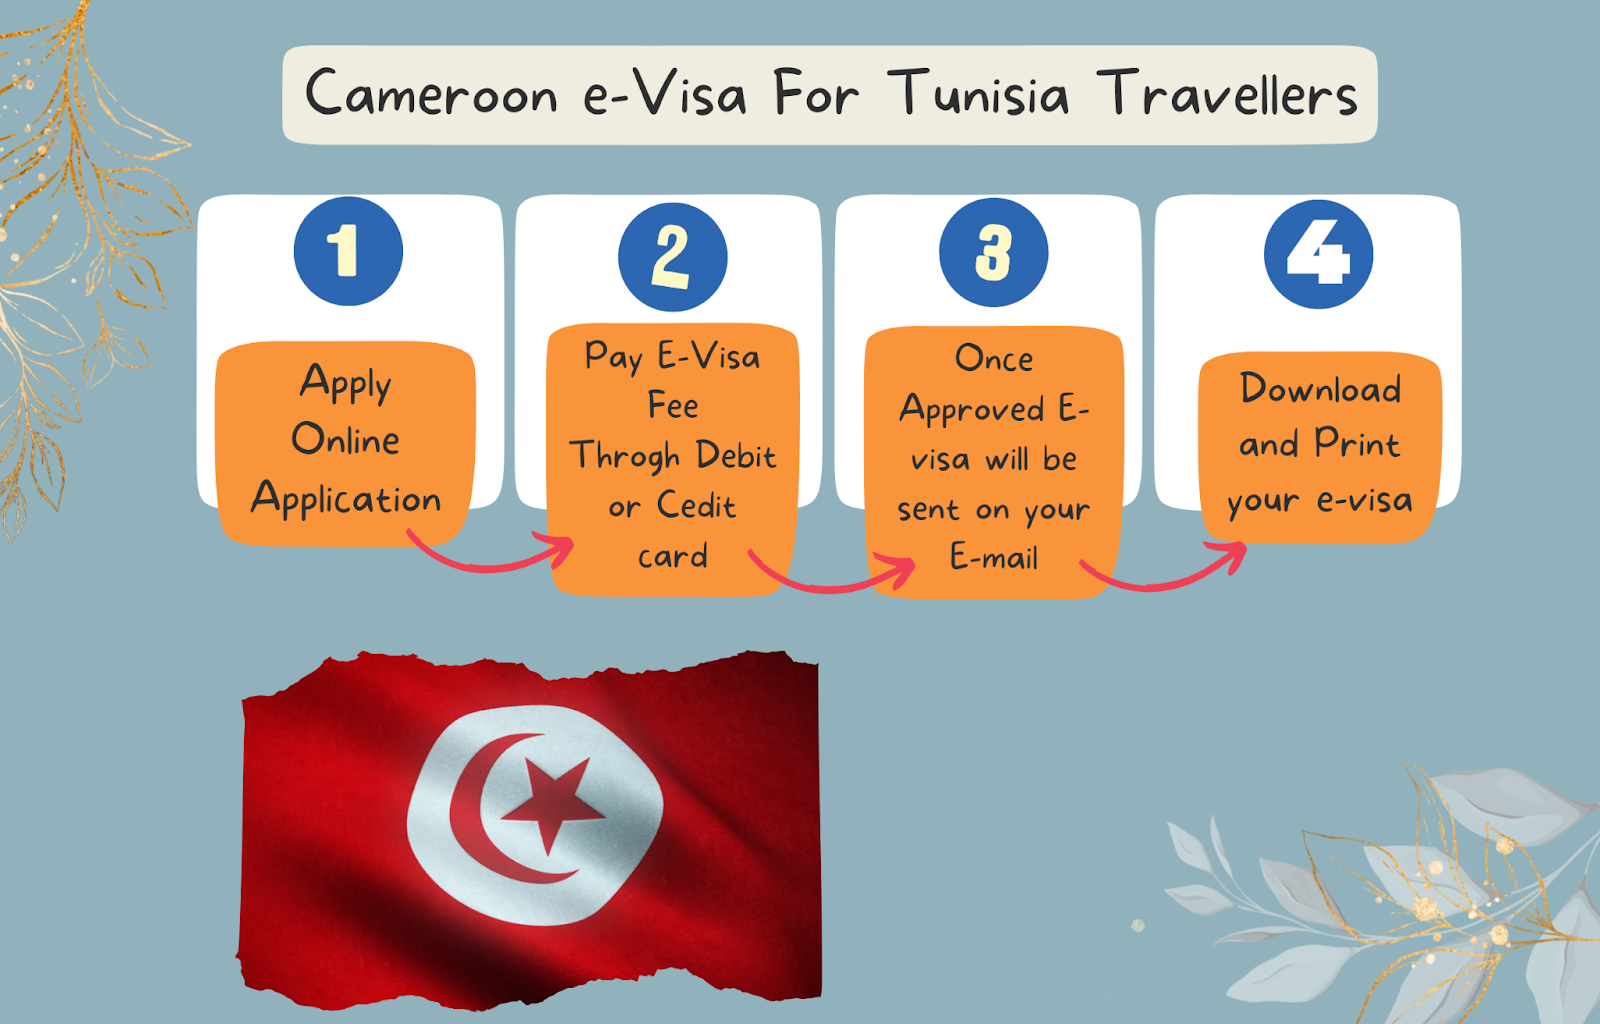 Cameroon e-Visa from Tunisia